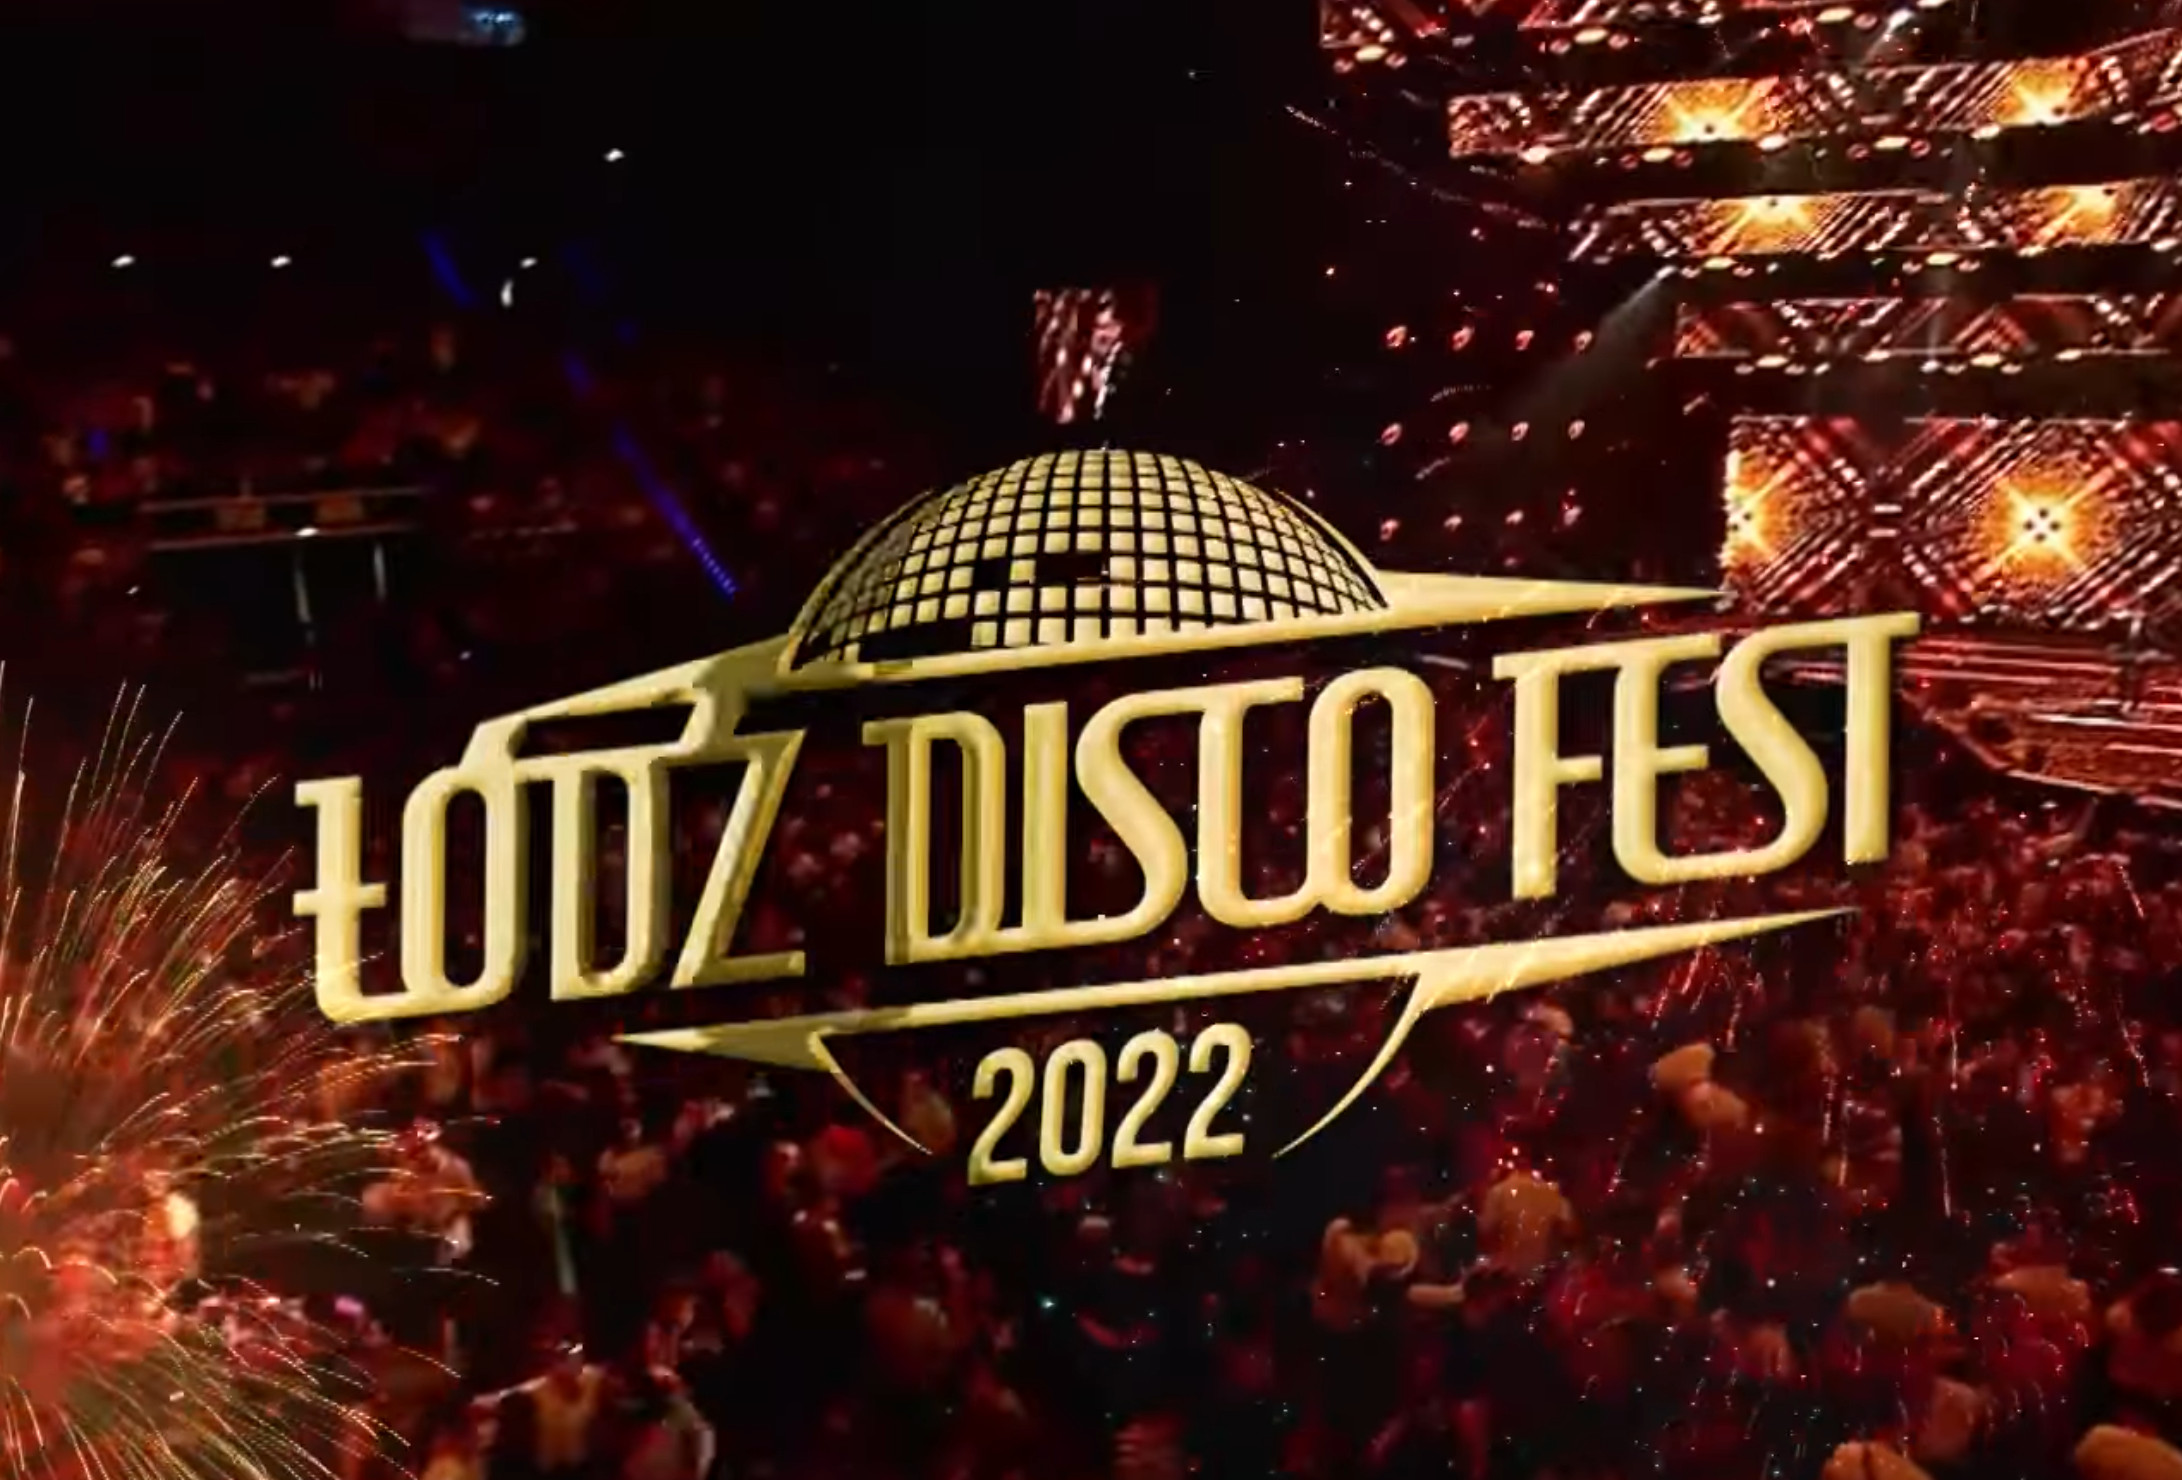 Łódź Disco Fest 2022! W Atlas Arenie zbierze się śmietanka disco polo! Bilety się wyprzedają! 